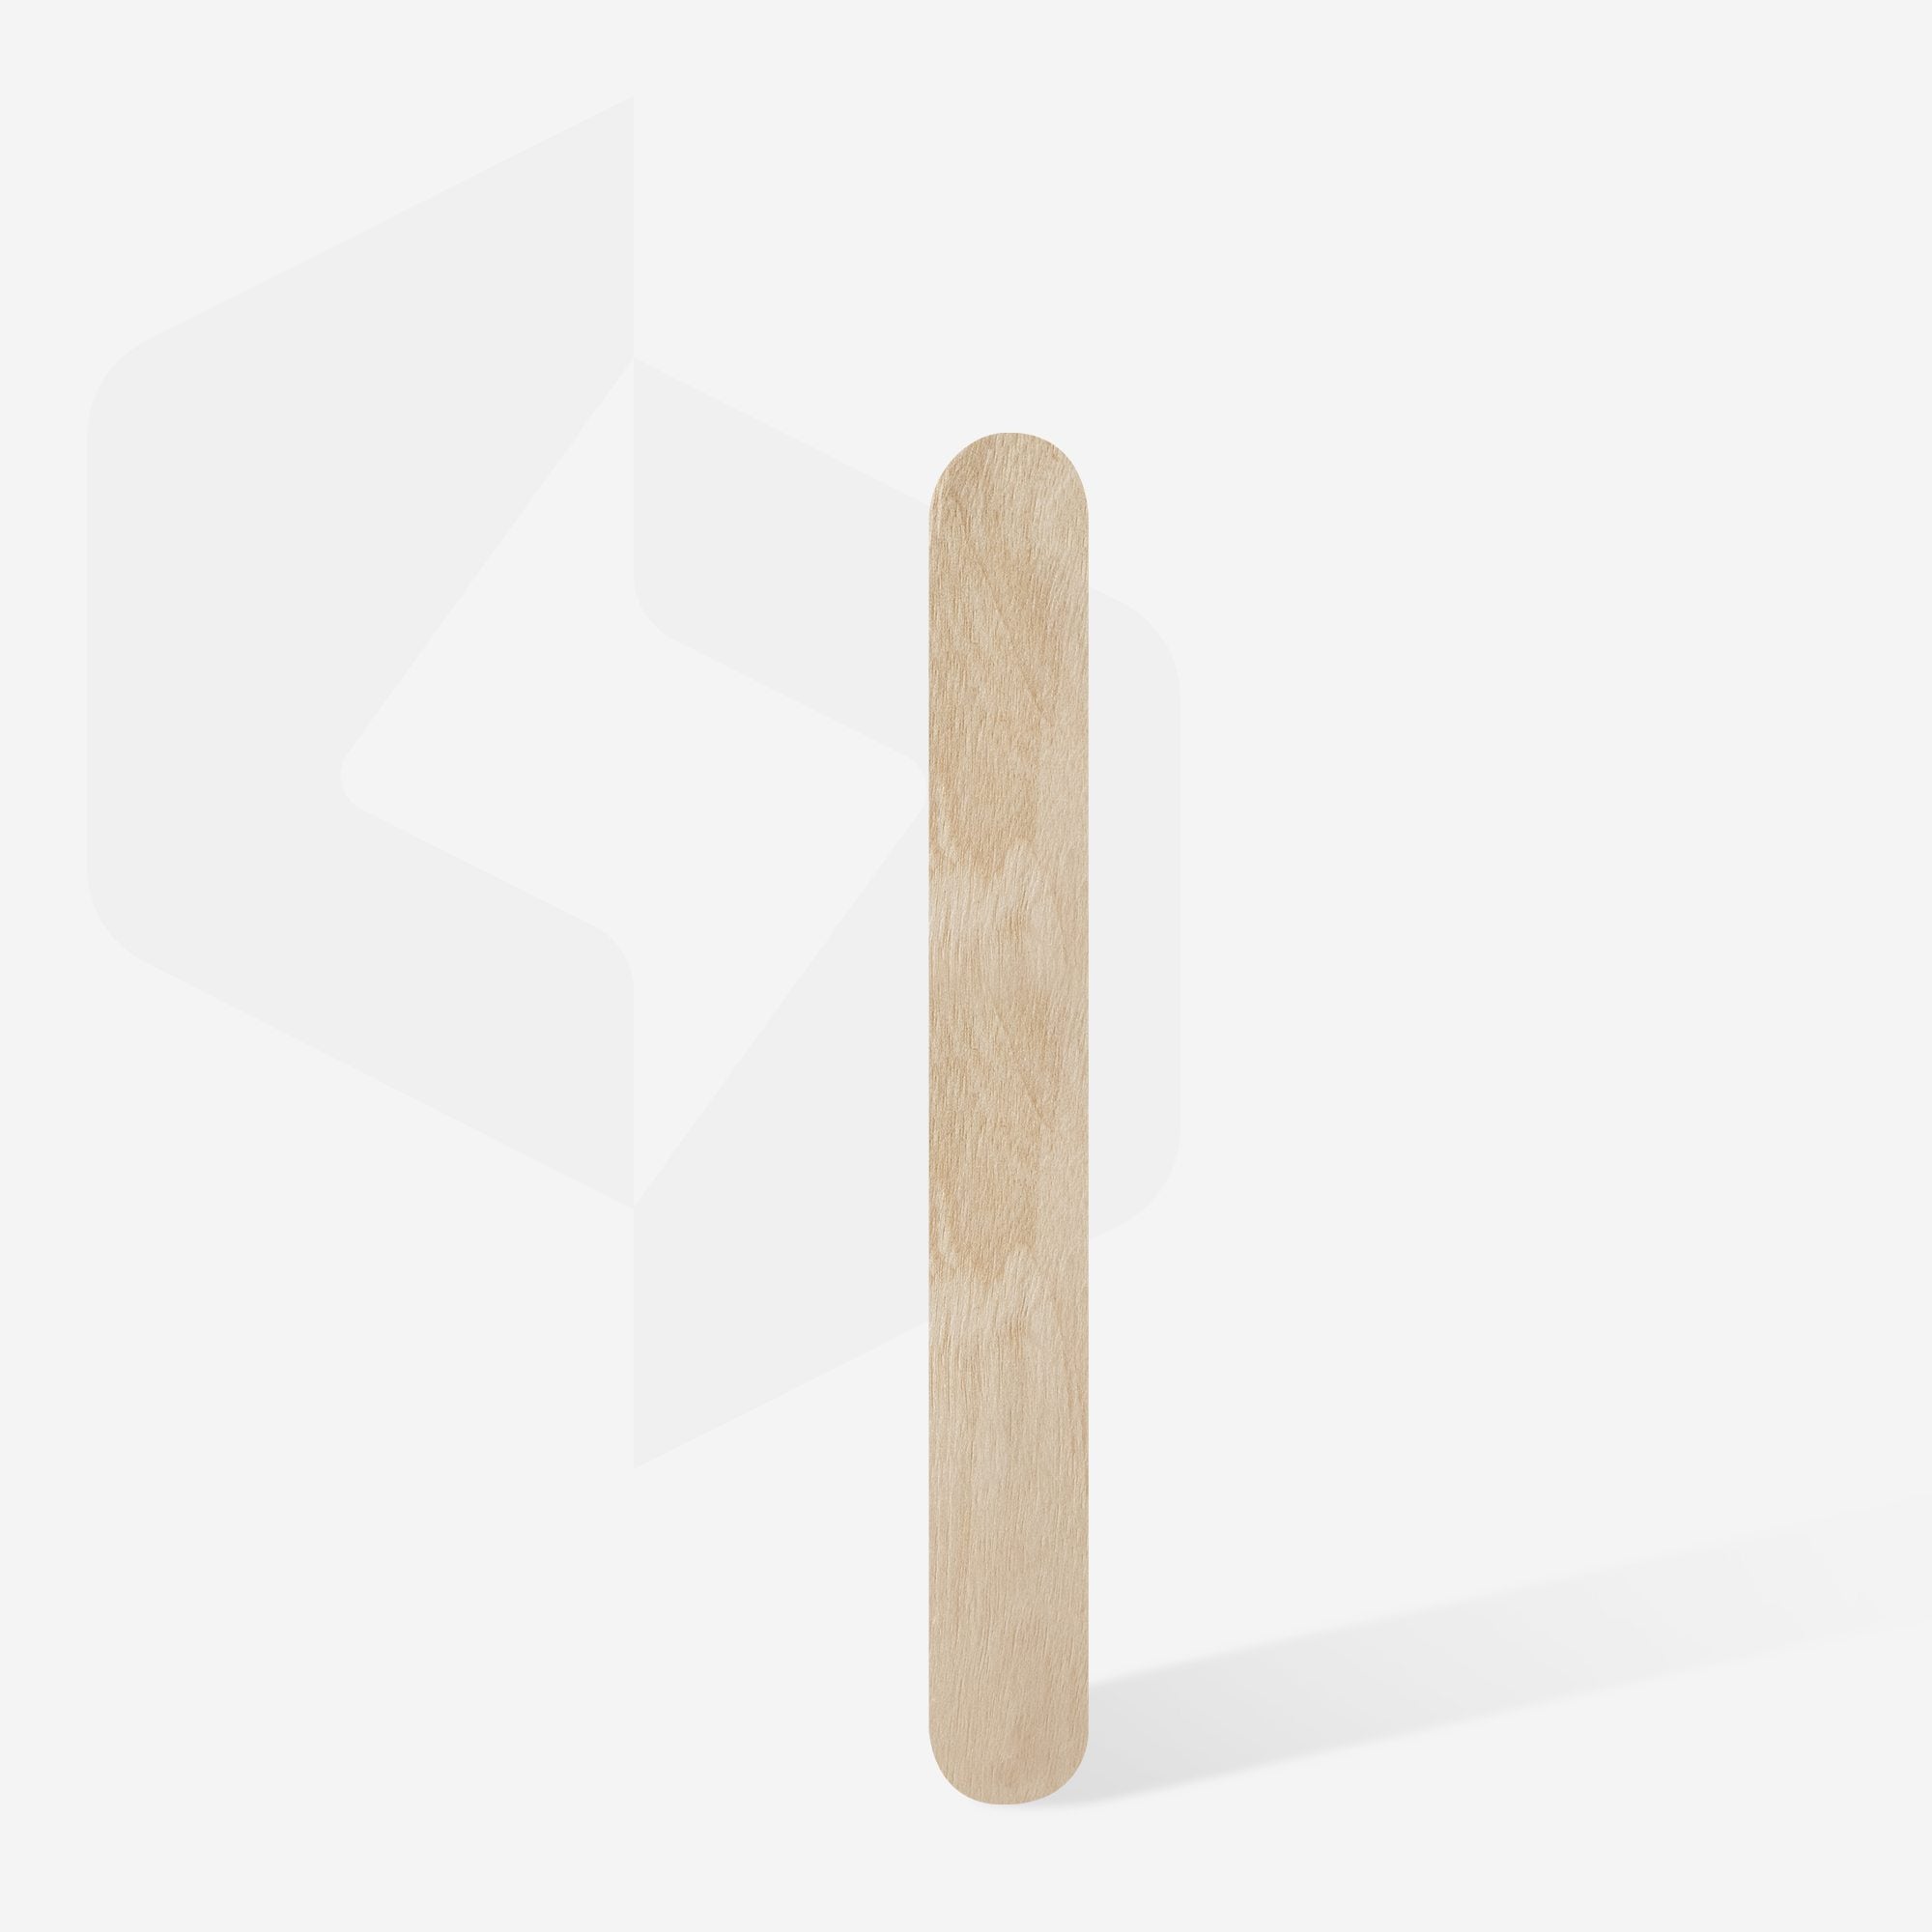 Lima di legno monouso dritta (base) EXPERT 20 (50 pezzi), set